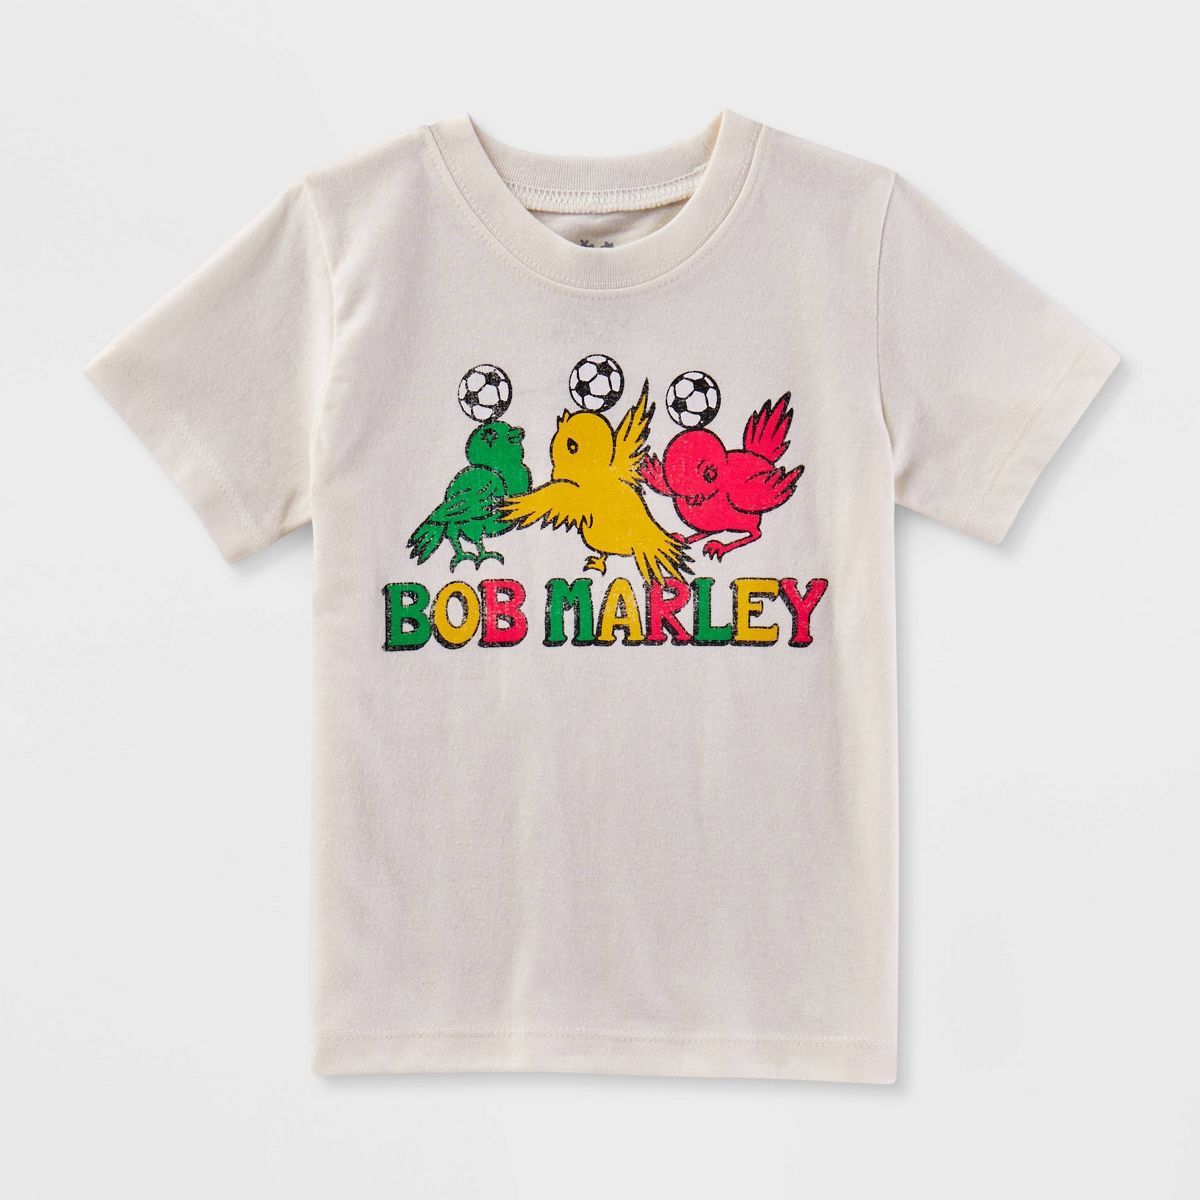 Toddler Bob Marley Logo Printed T-Shirt - White | Target